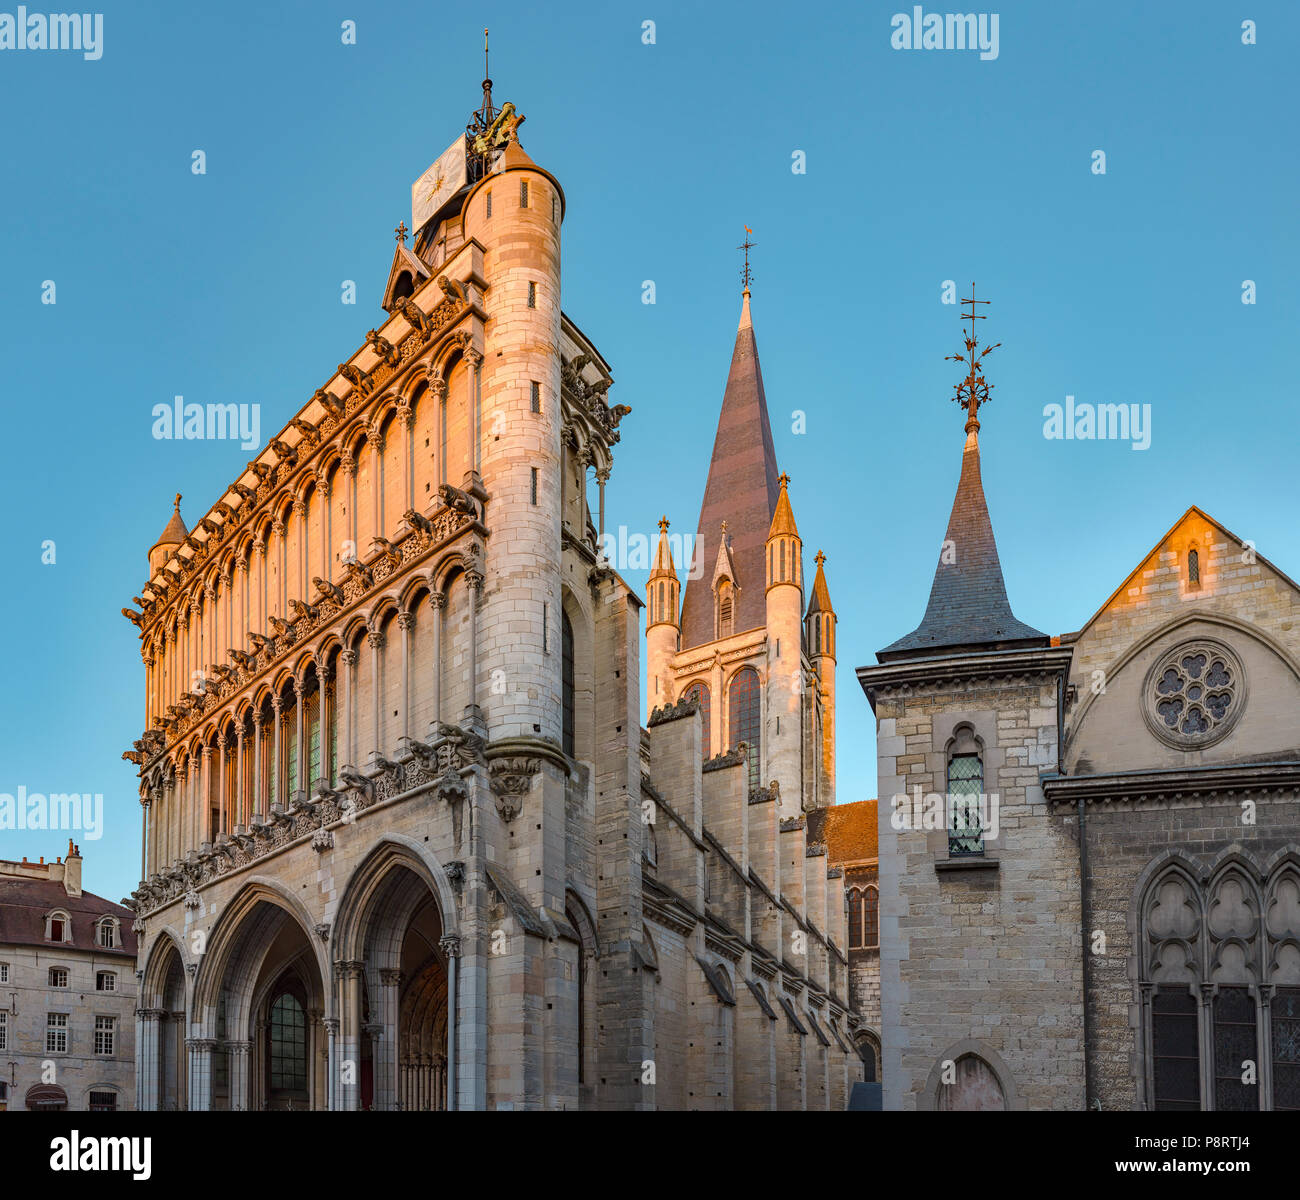 Eglise Notre Dame de Dijon, Dijon,  France Stock Photo